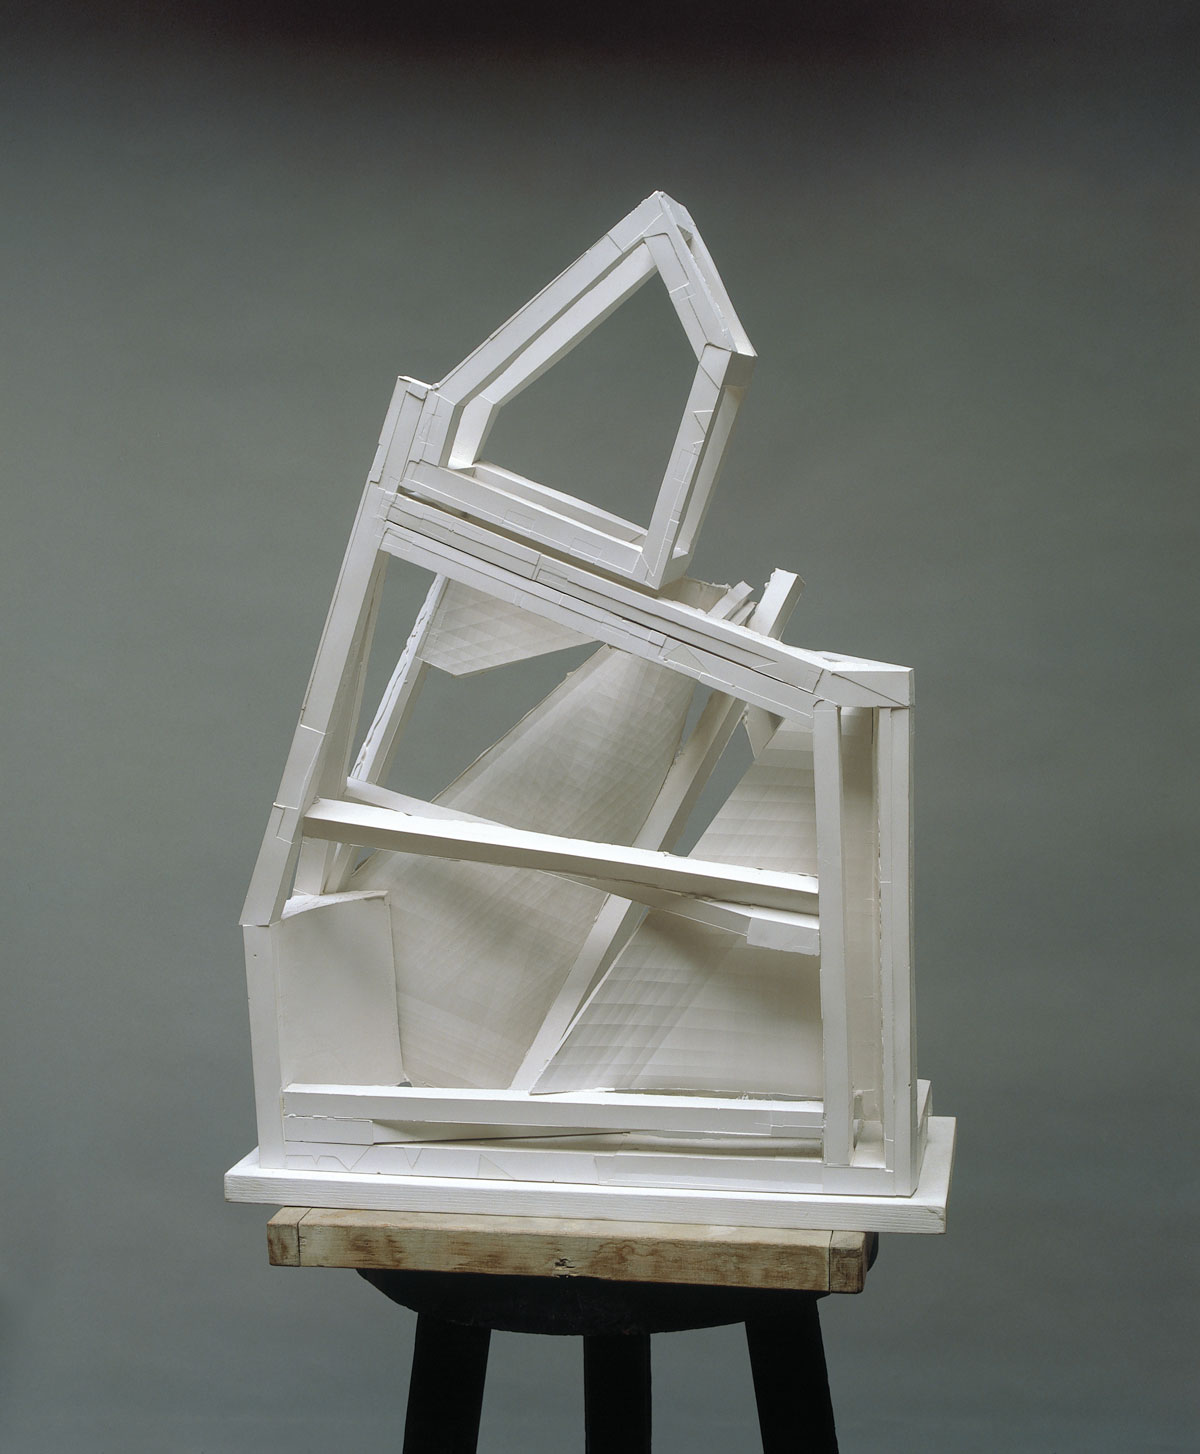 Jovánovics_The-Trojan-Paper-Mill-1986-plaster-68-x-50-x-21-cm-small